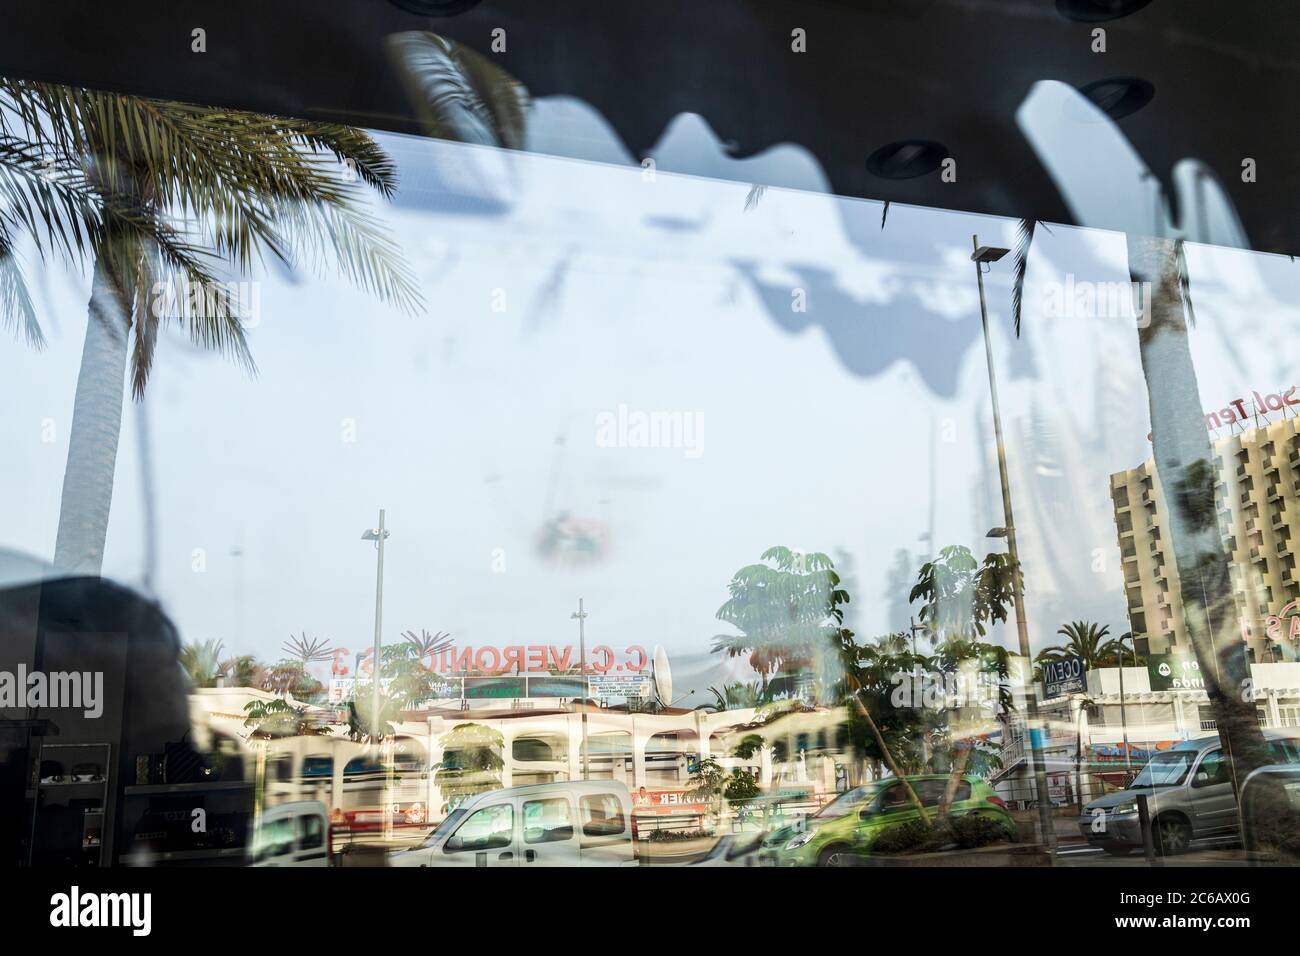 Das Einkaufszentrum Las Veronicas spiegelt sich in einem Schaufenster wider, die meisten Geschäfte sind nach der 19 geschlossenen Sperre Playa de Las A noch geschlossen Stockfoto